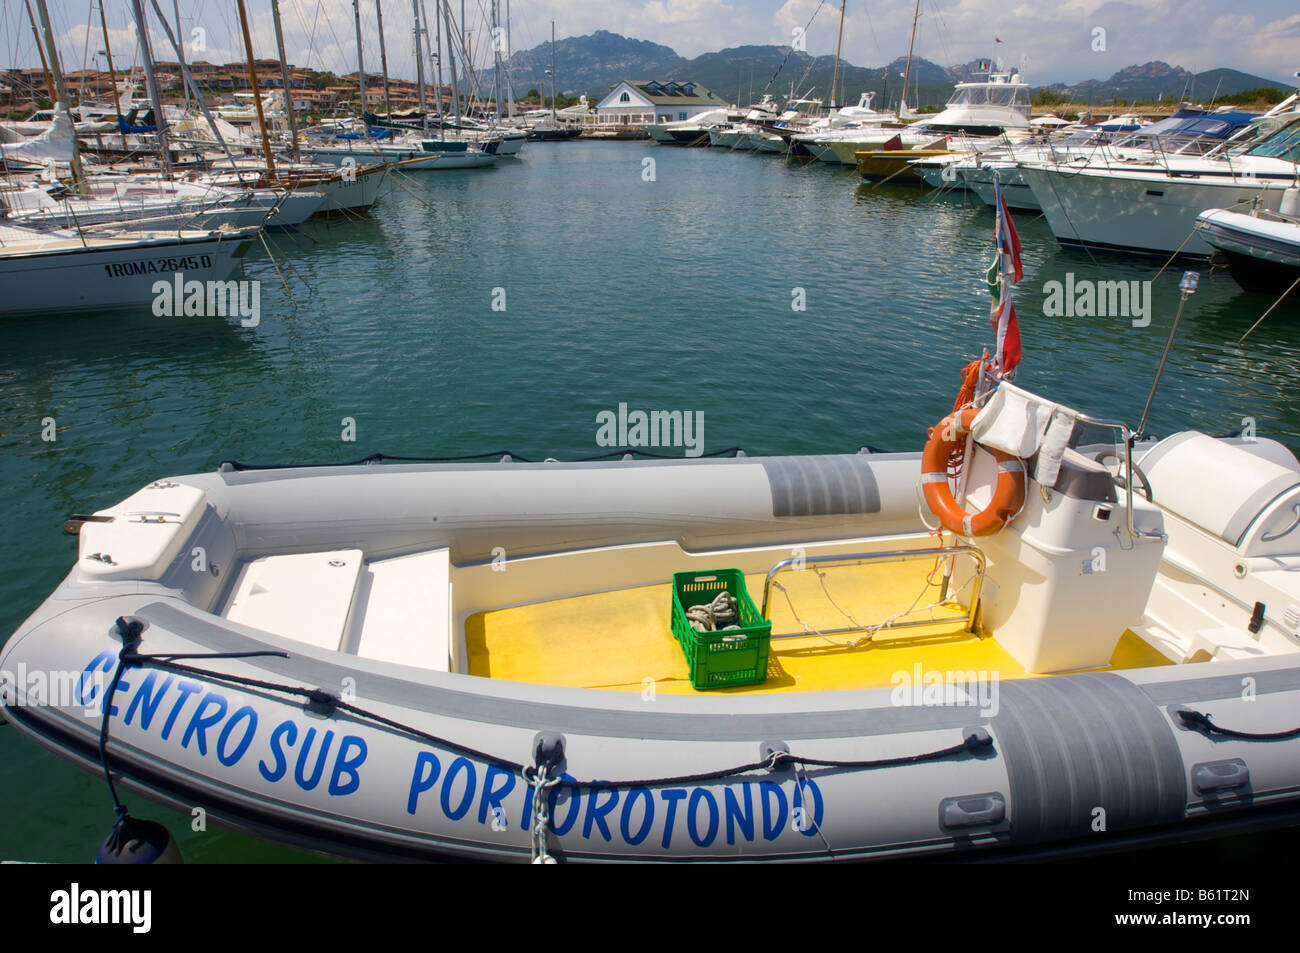 Sail and motorboats in the marina of Porto Rotondo, Sardinia, Italy, Europe Stock Photo